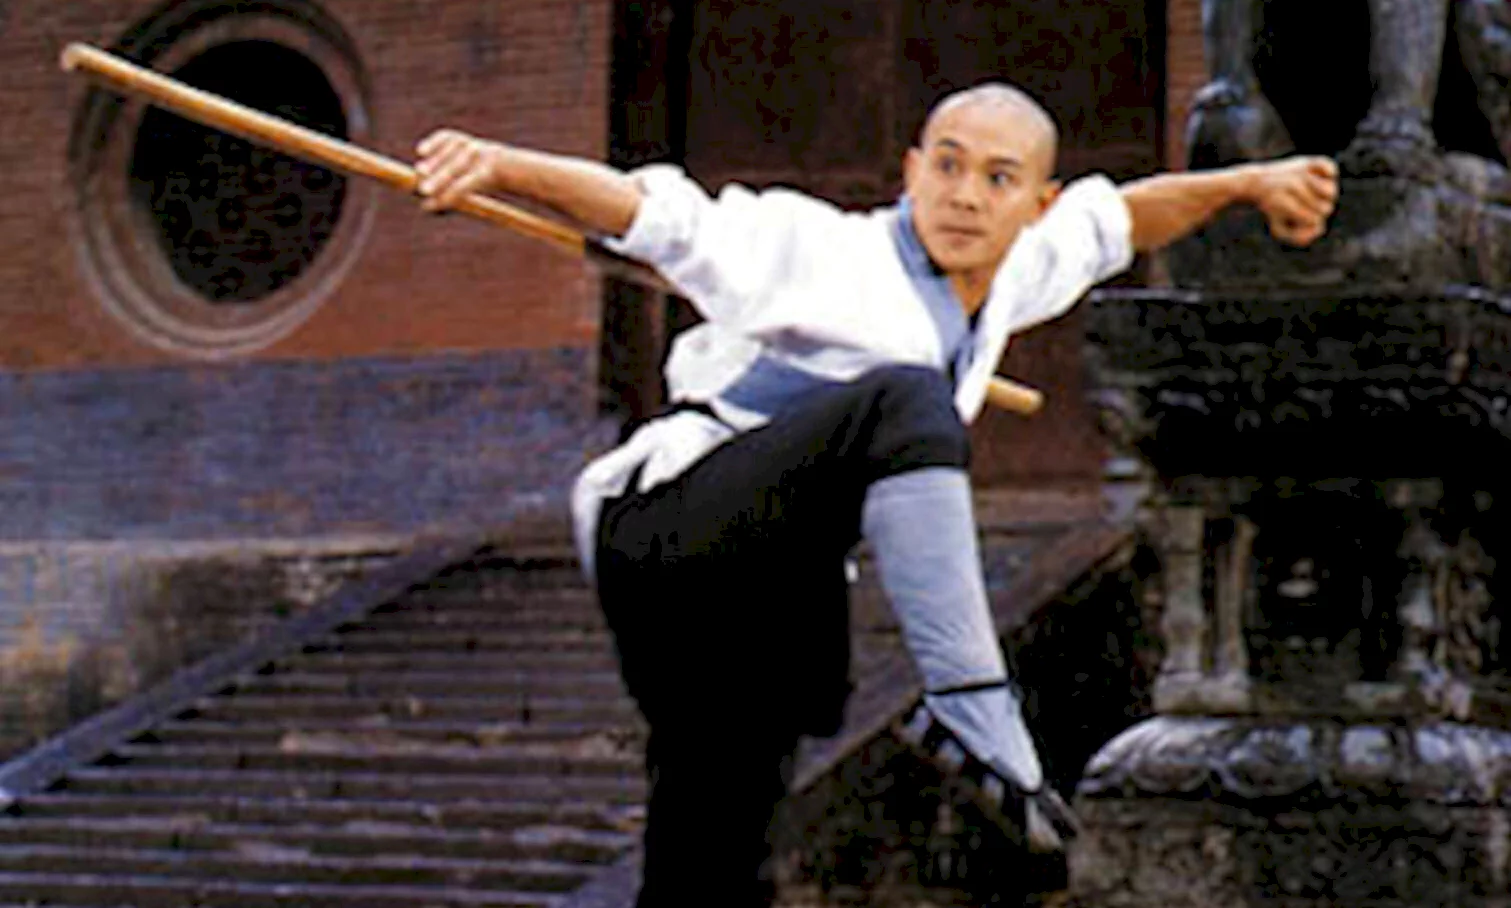 Photo du film : Les arts martiaux de shaolin